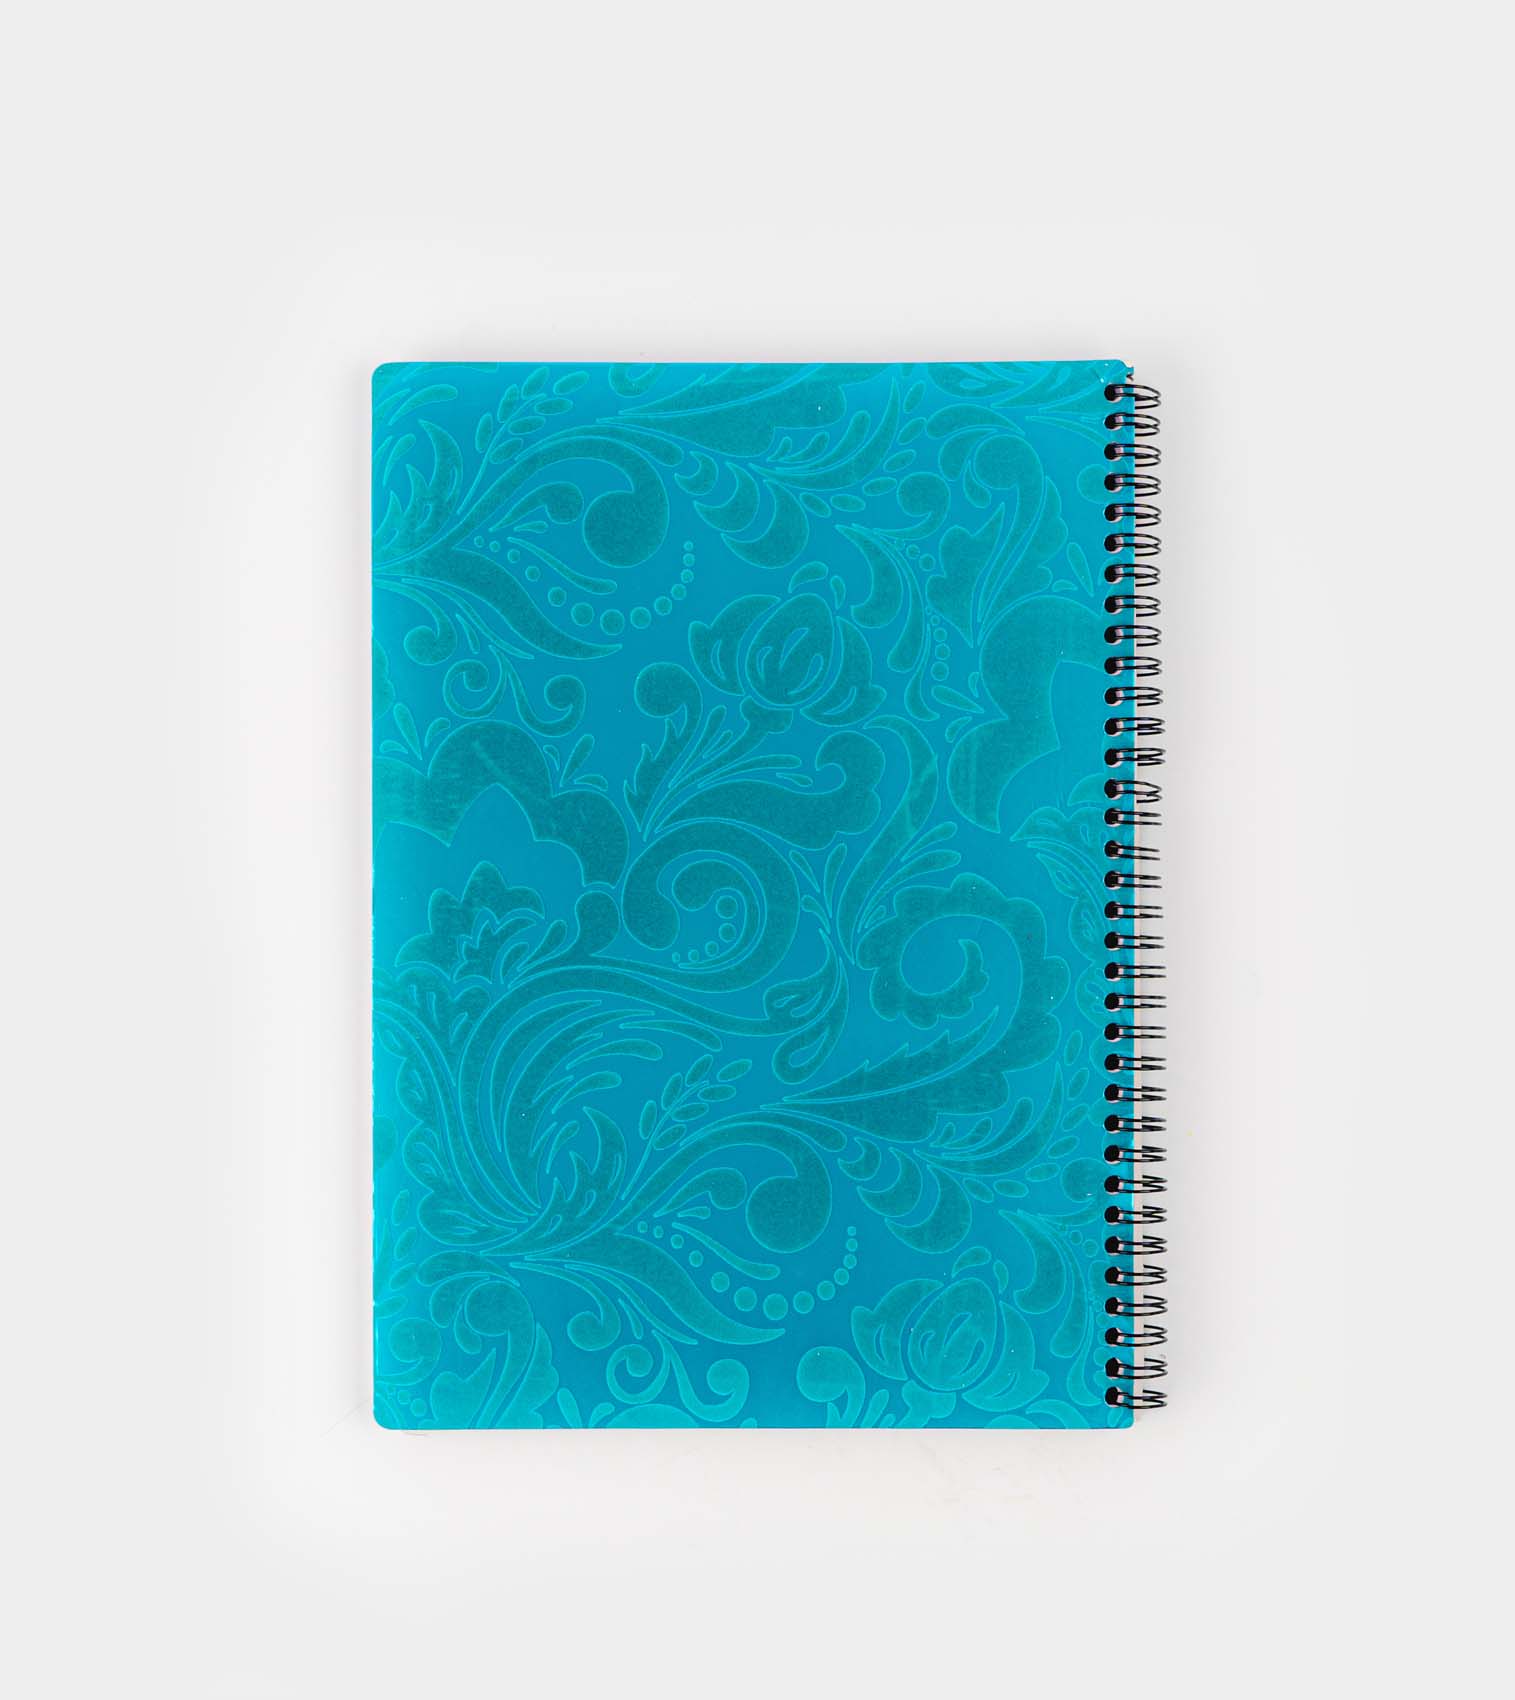 100 sheet A4 notebook